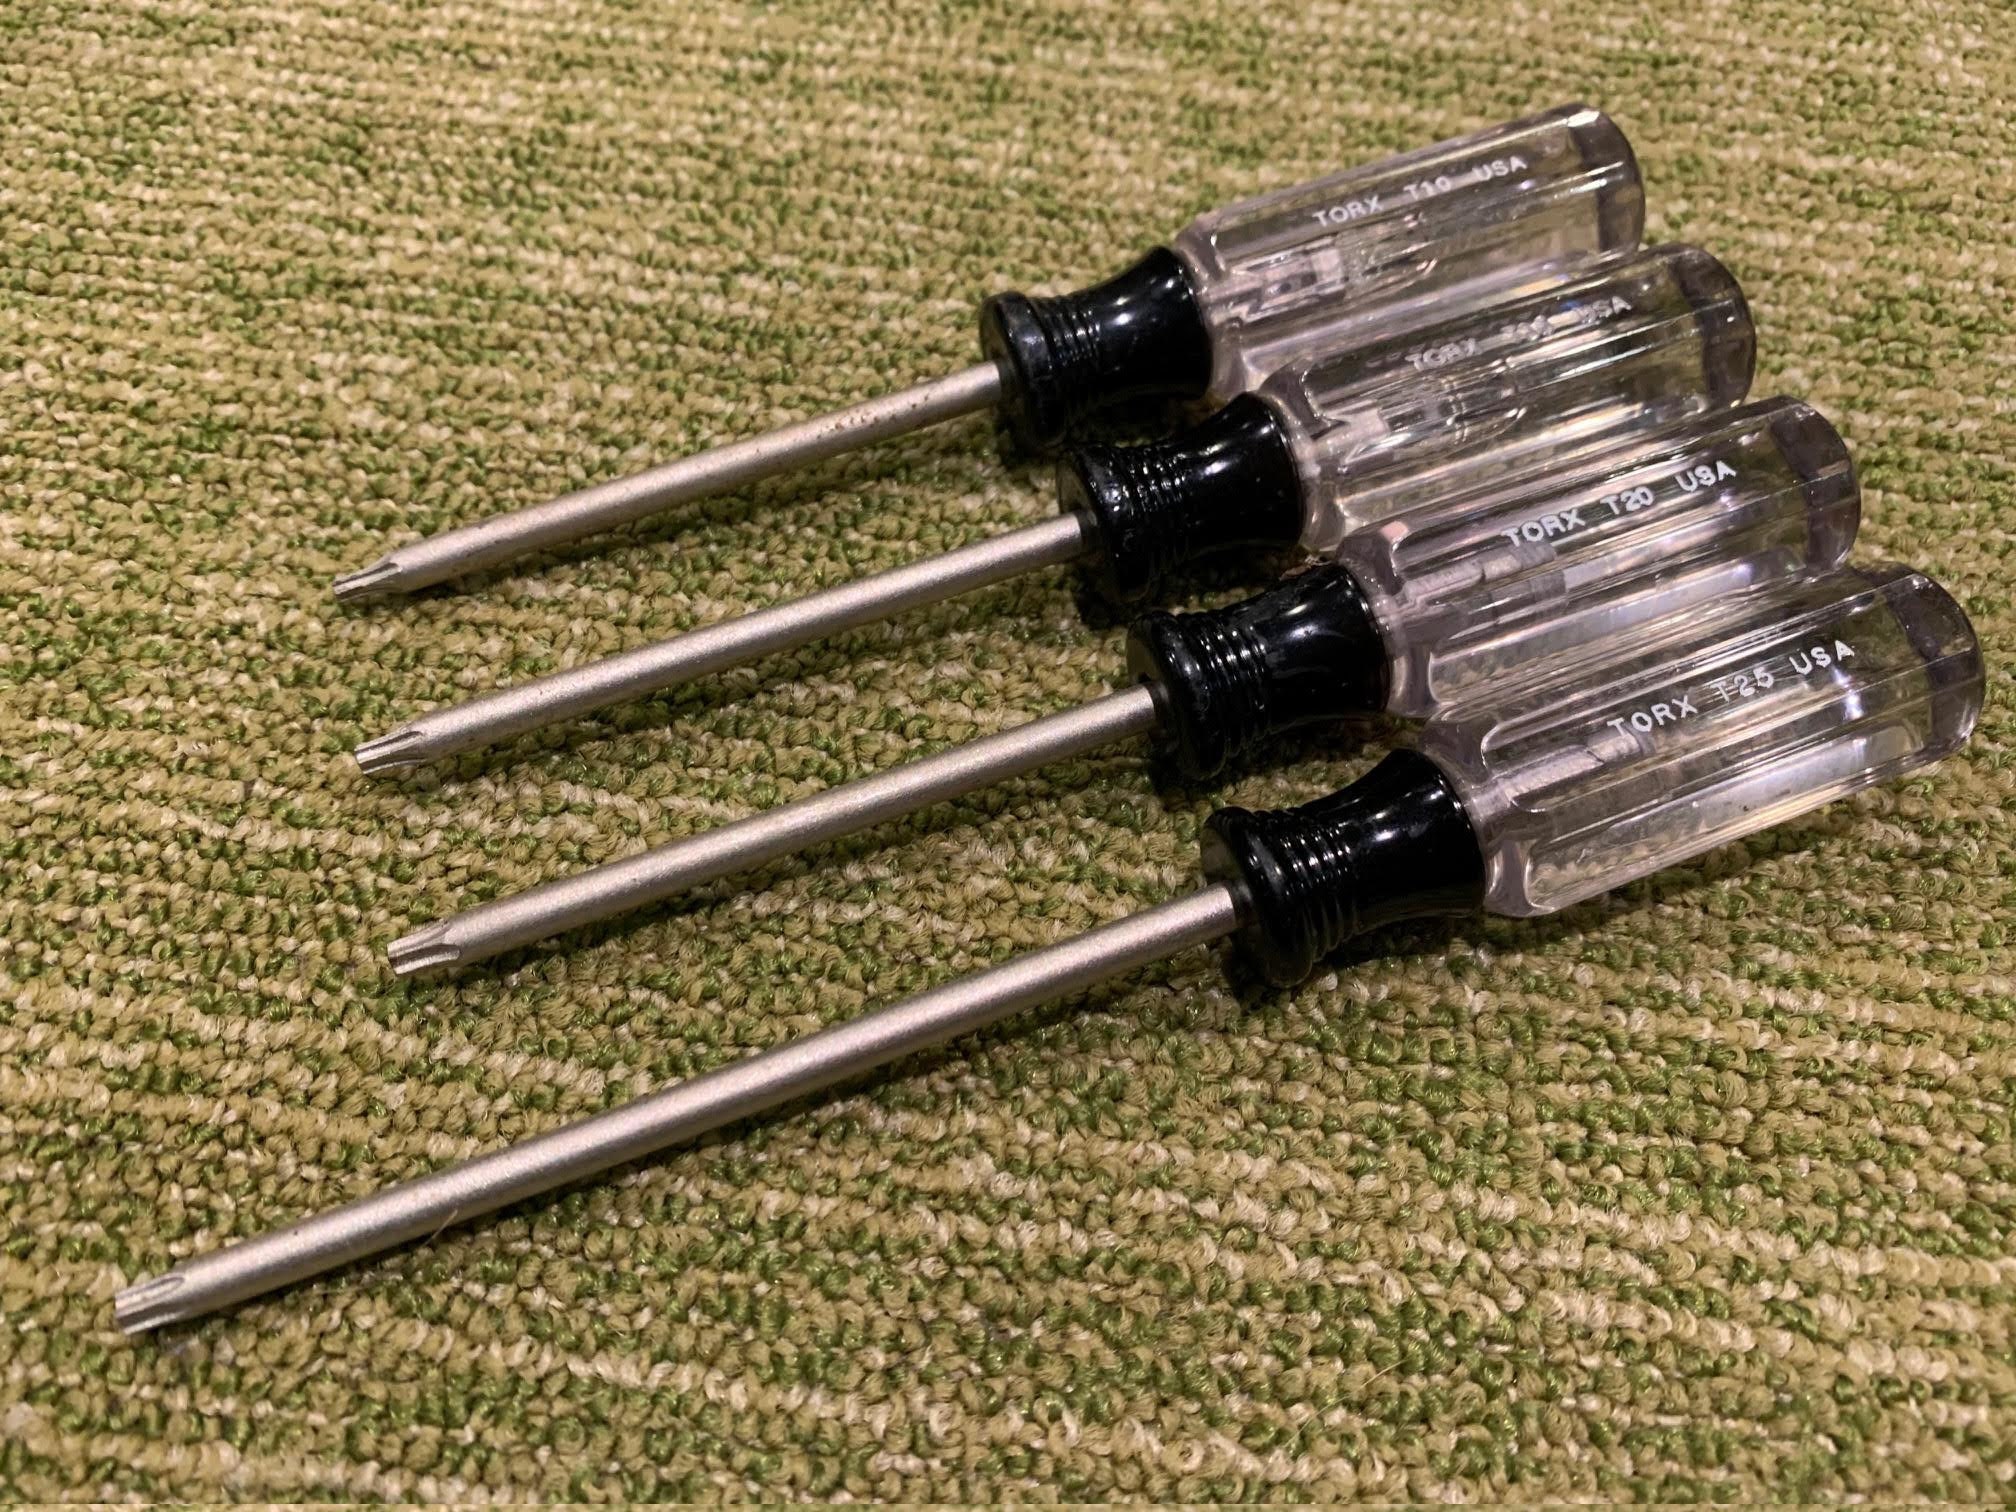 mini torx screwdriver set